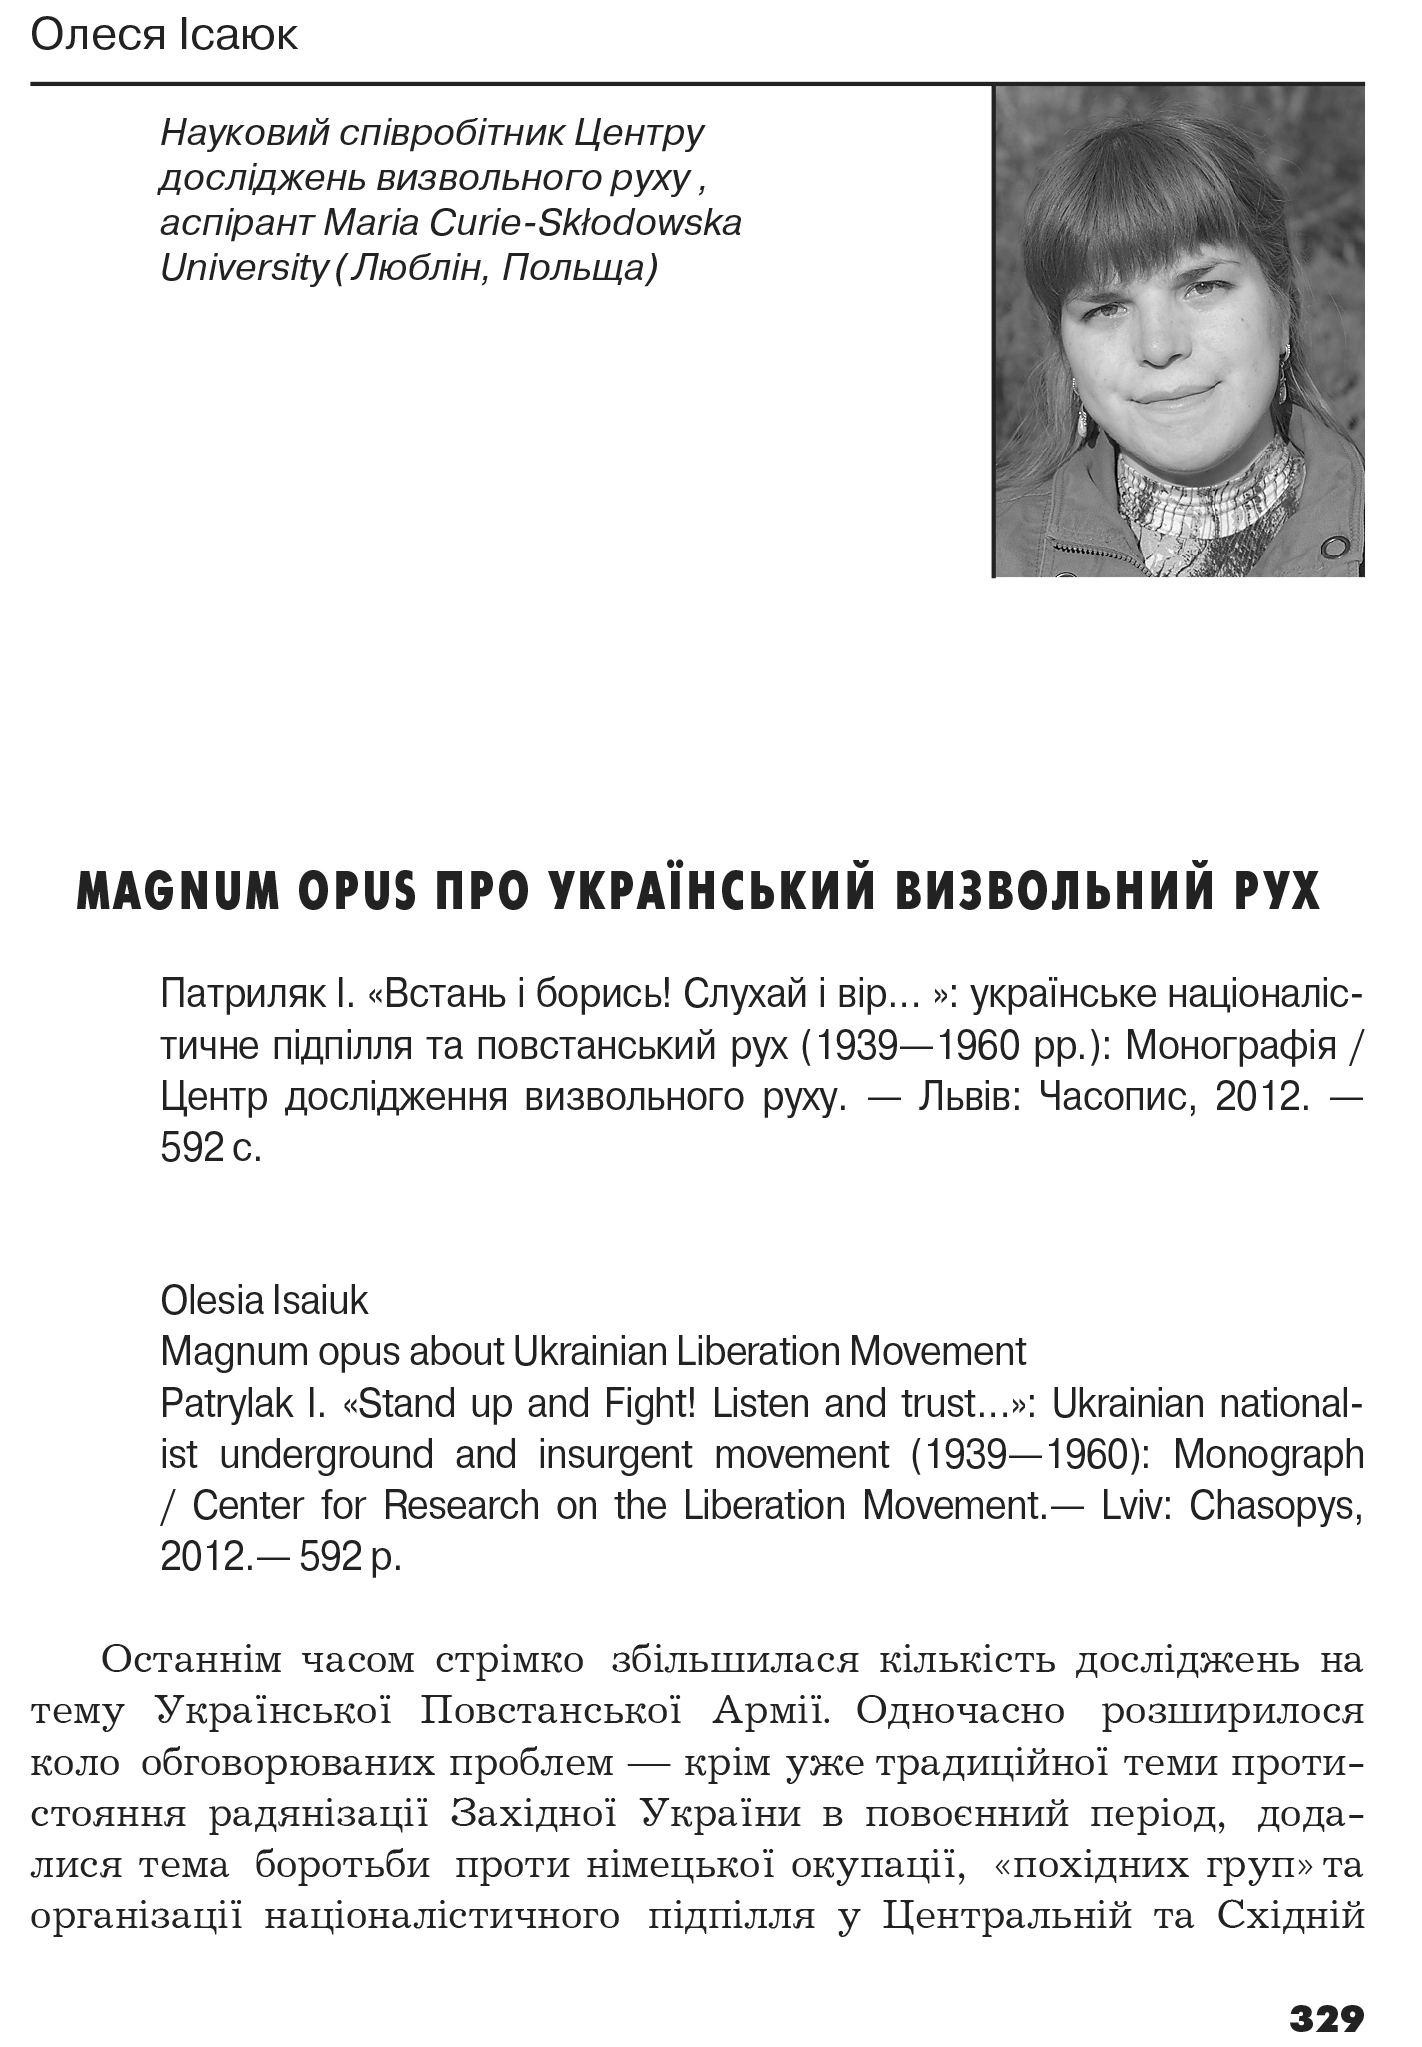 Український визвольний рух №18, ст. 329 - 334